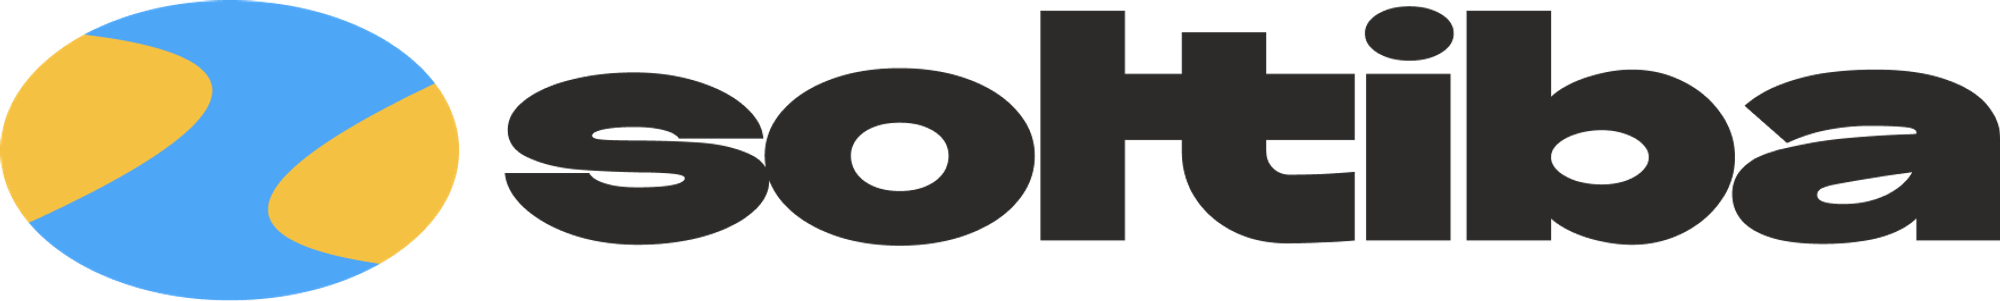 soltiba.com Logo